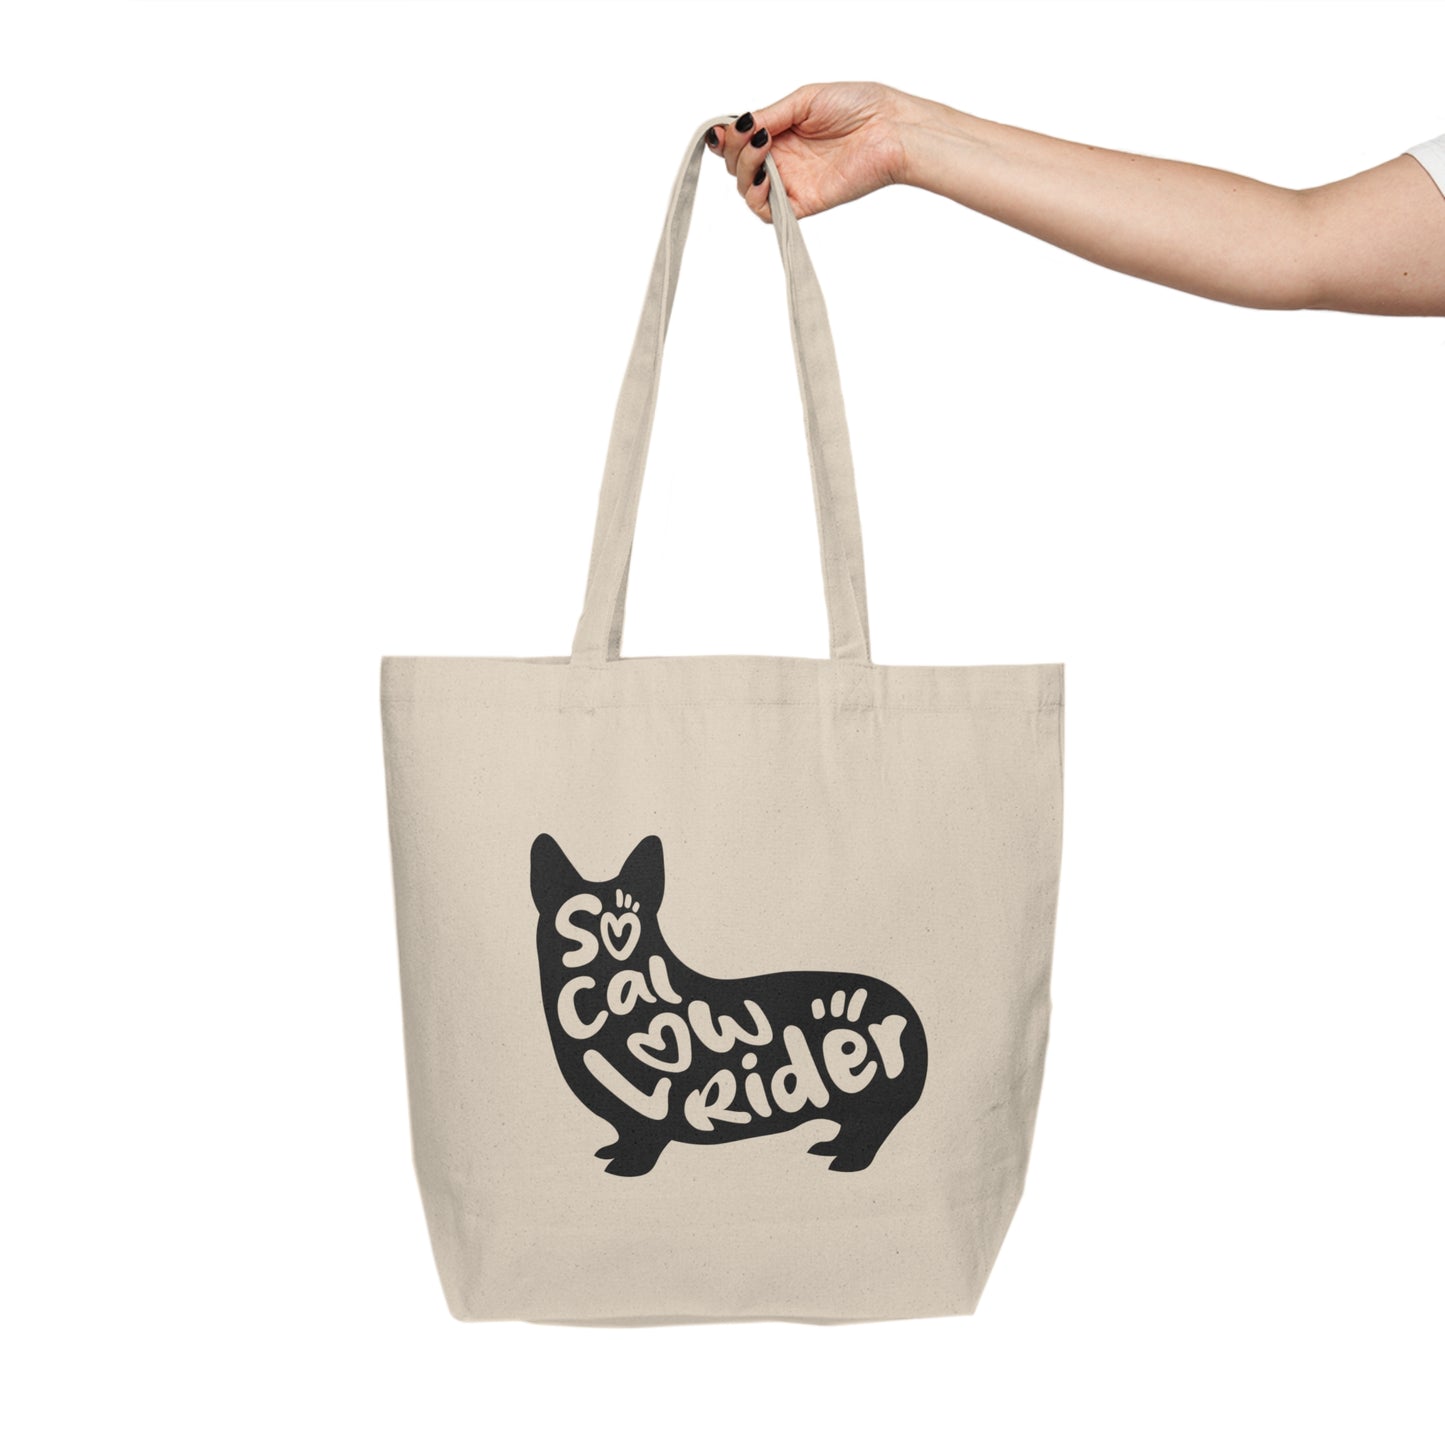 SoCal LowRider Southern California corgi dog canvas tote shopping bag